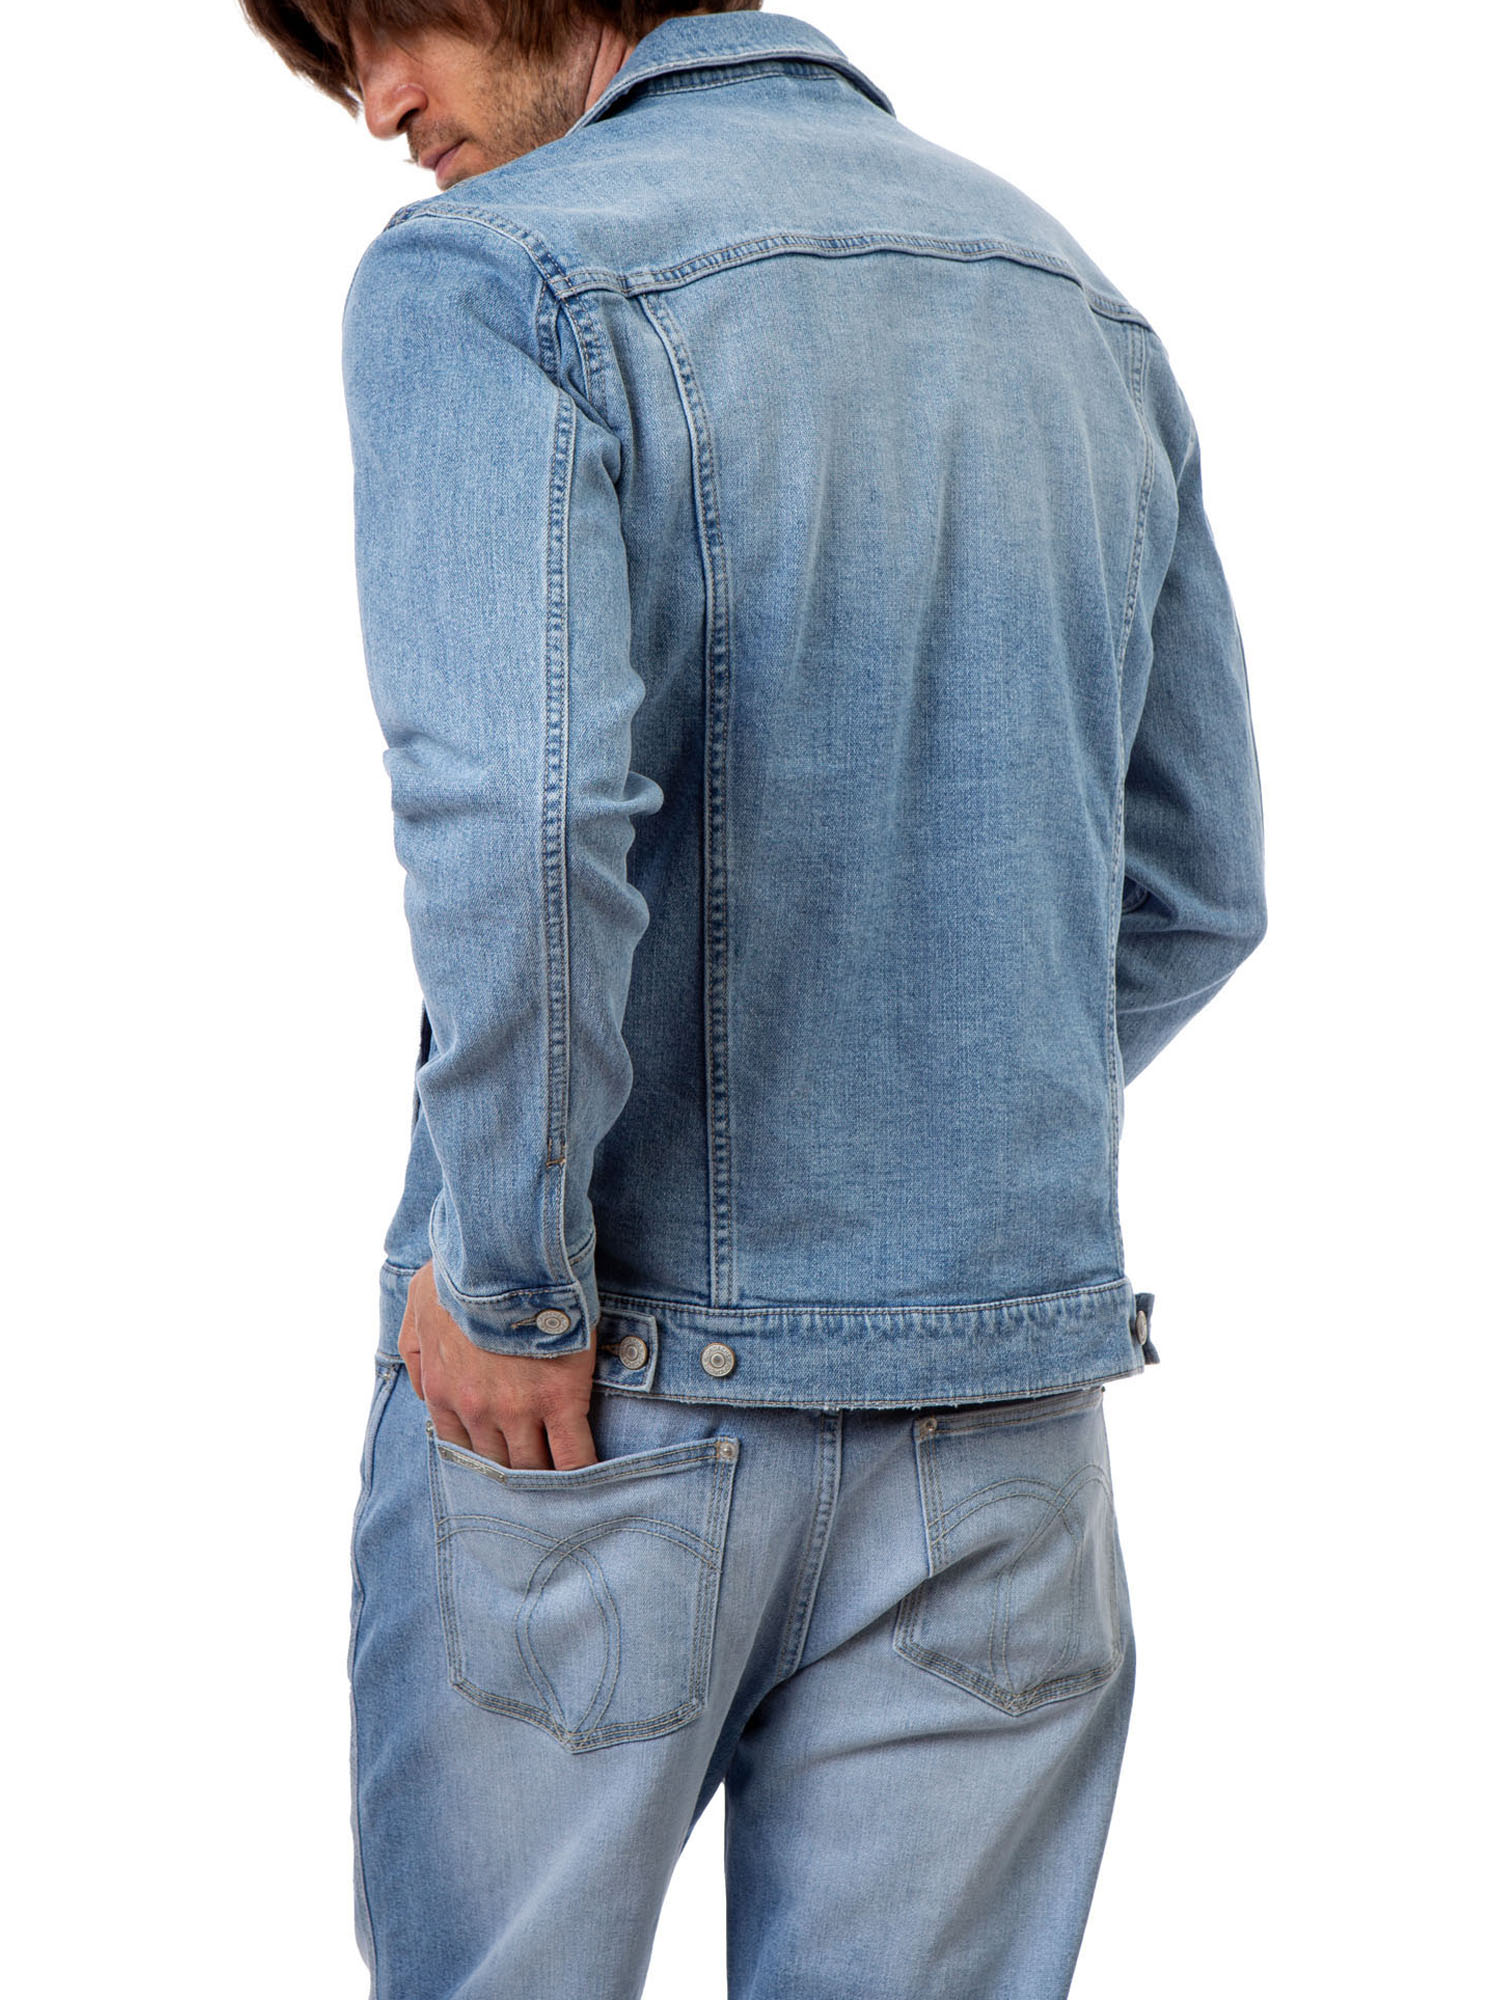 Jordache Vintage Men's Nash Patches Denim Jacket, Sizes S-2XL, Men's Denim Jean Jackets - image 4 of 6